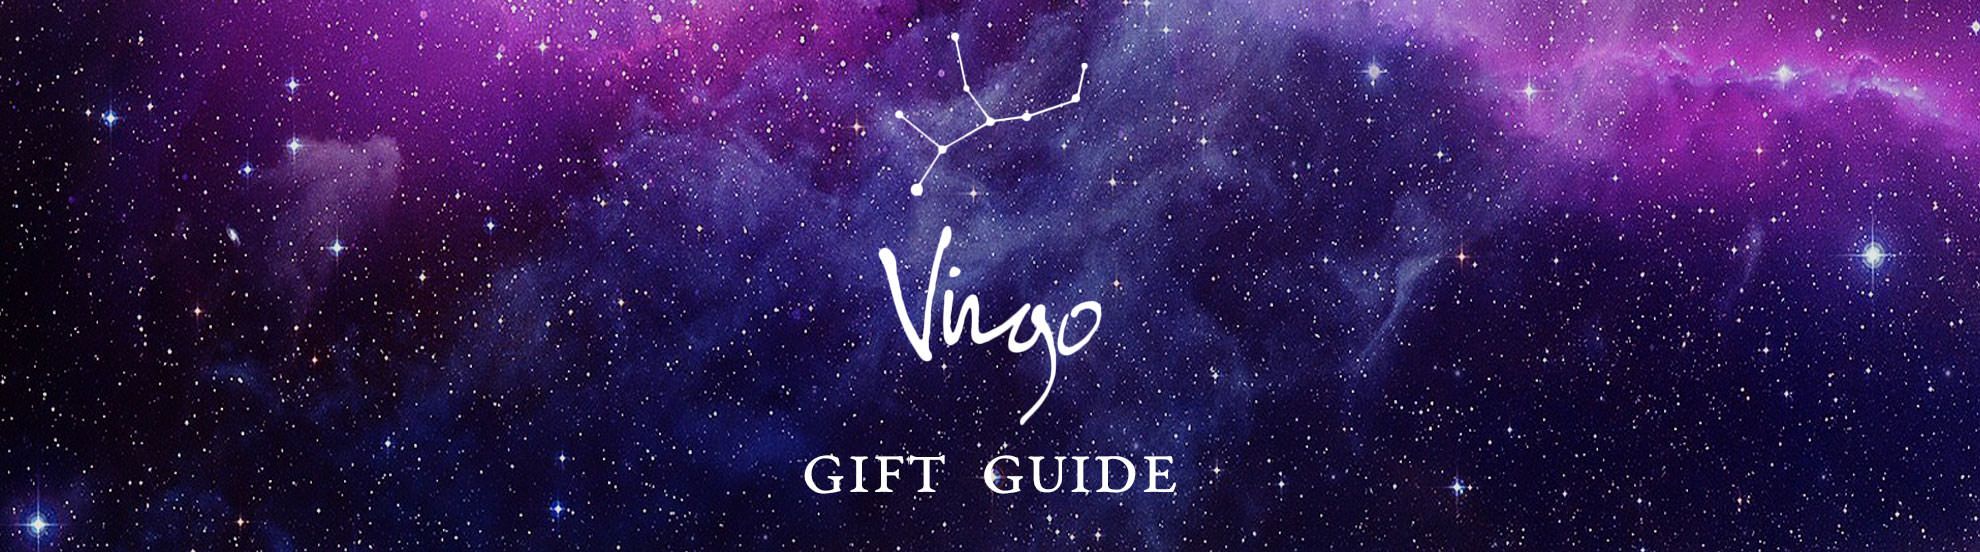 The virgo gift guide - Virgo